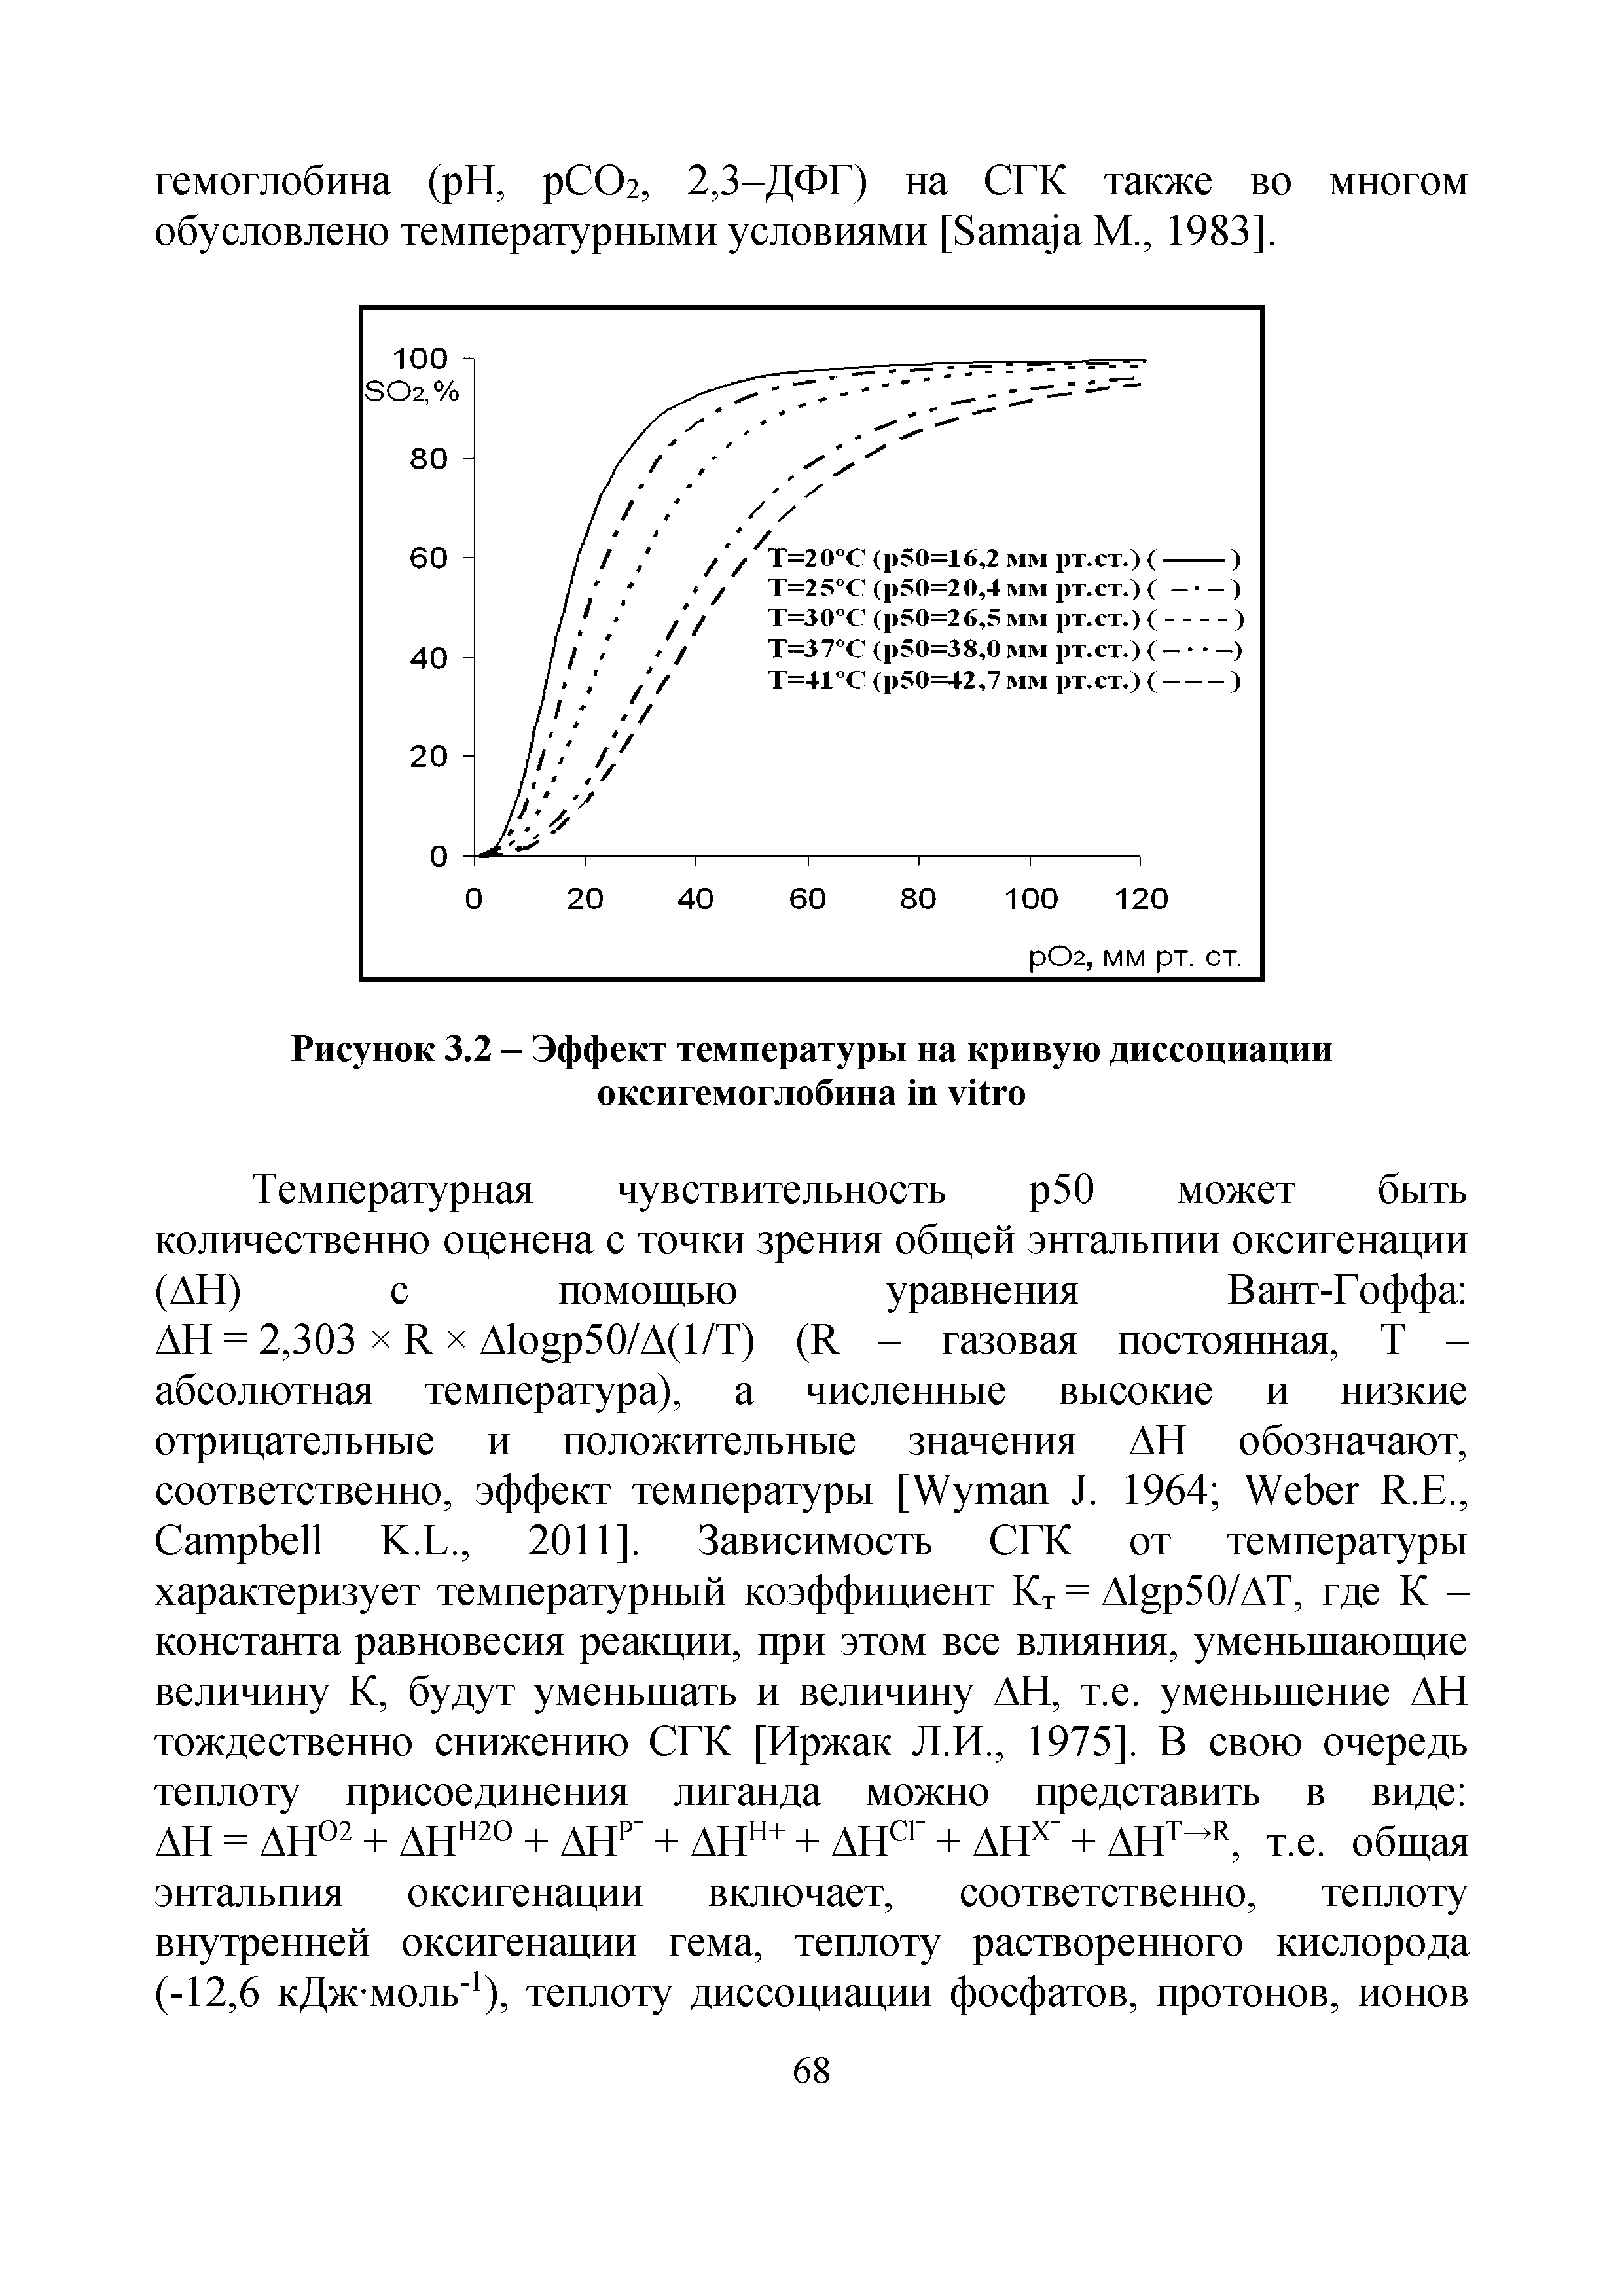 Рисунок 3.2 - Эффект температуры на кривую диссоциации оксигемоглобина ...